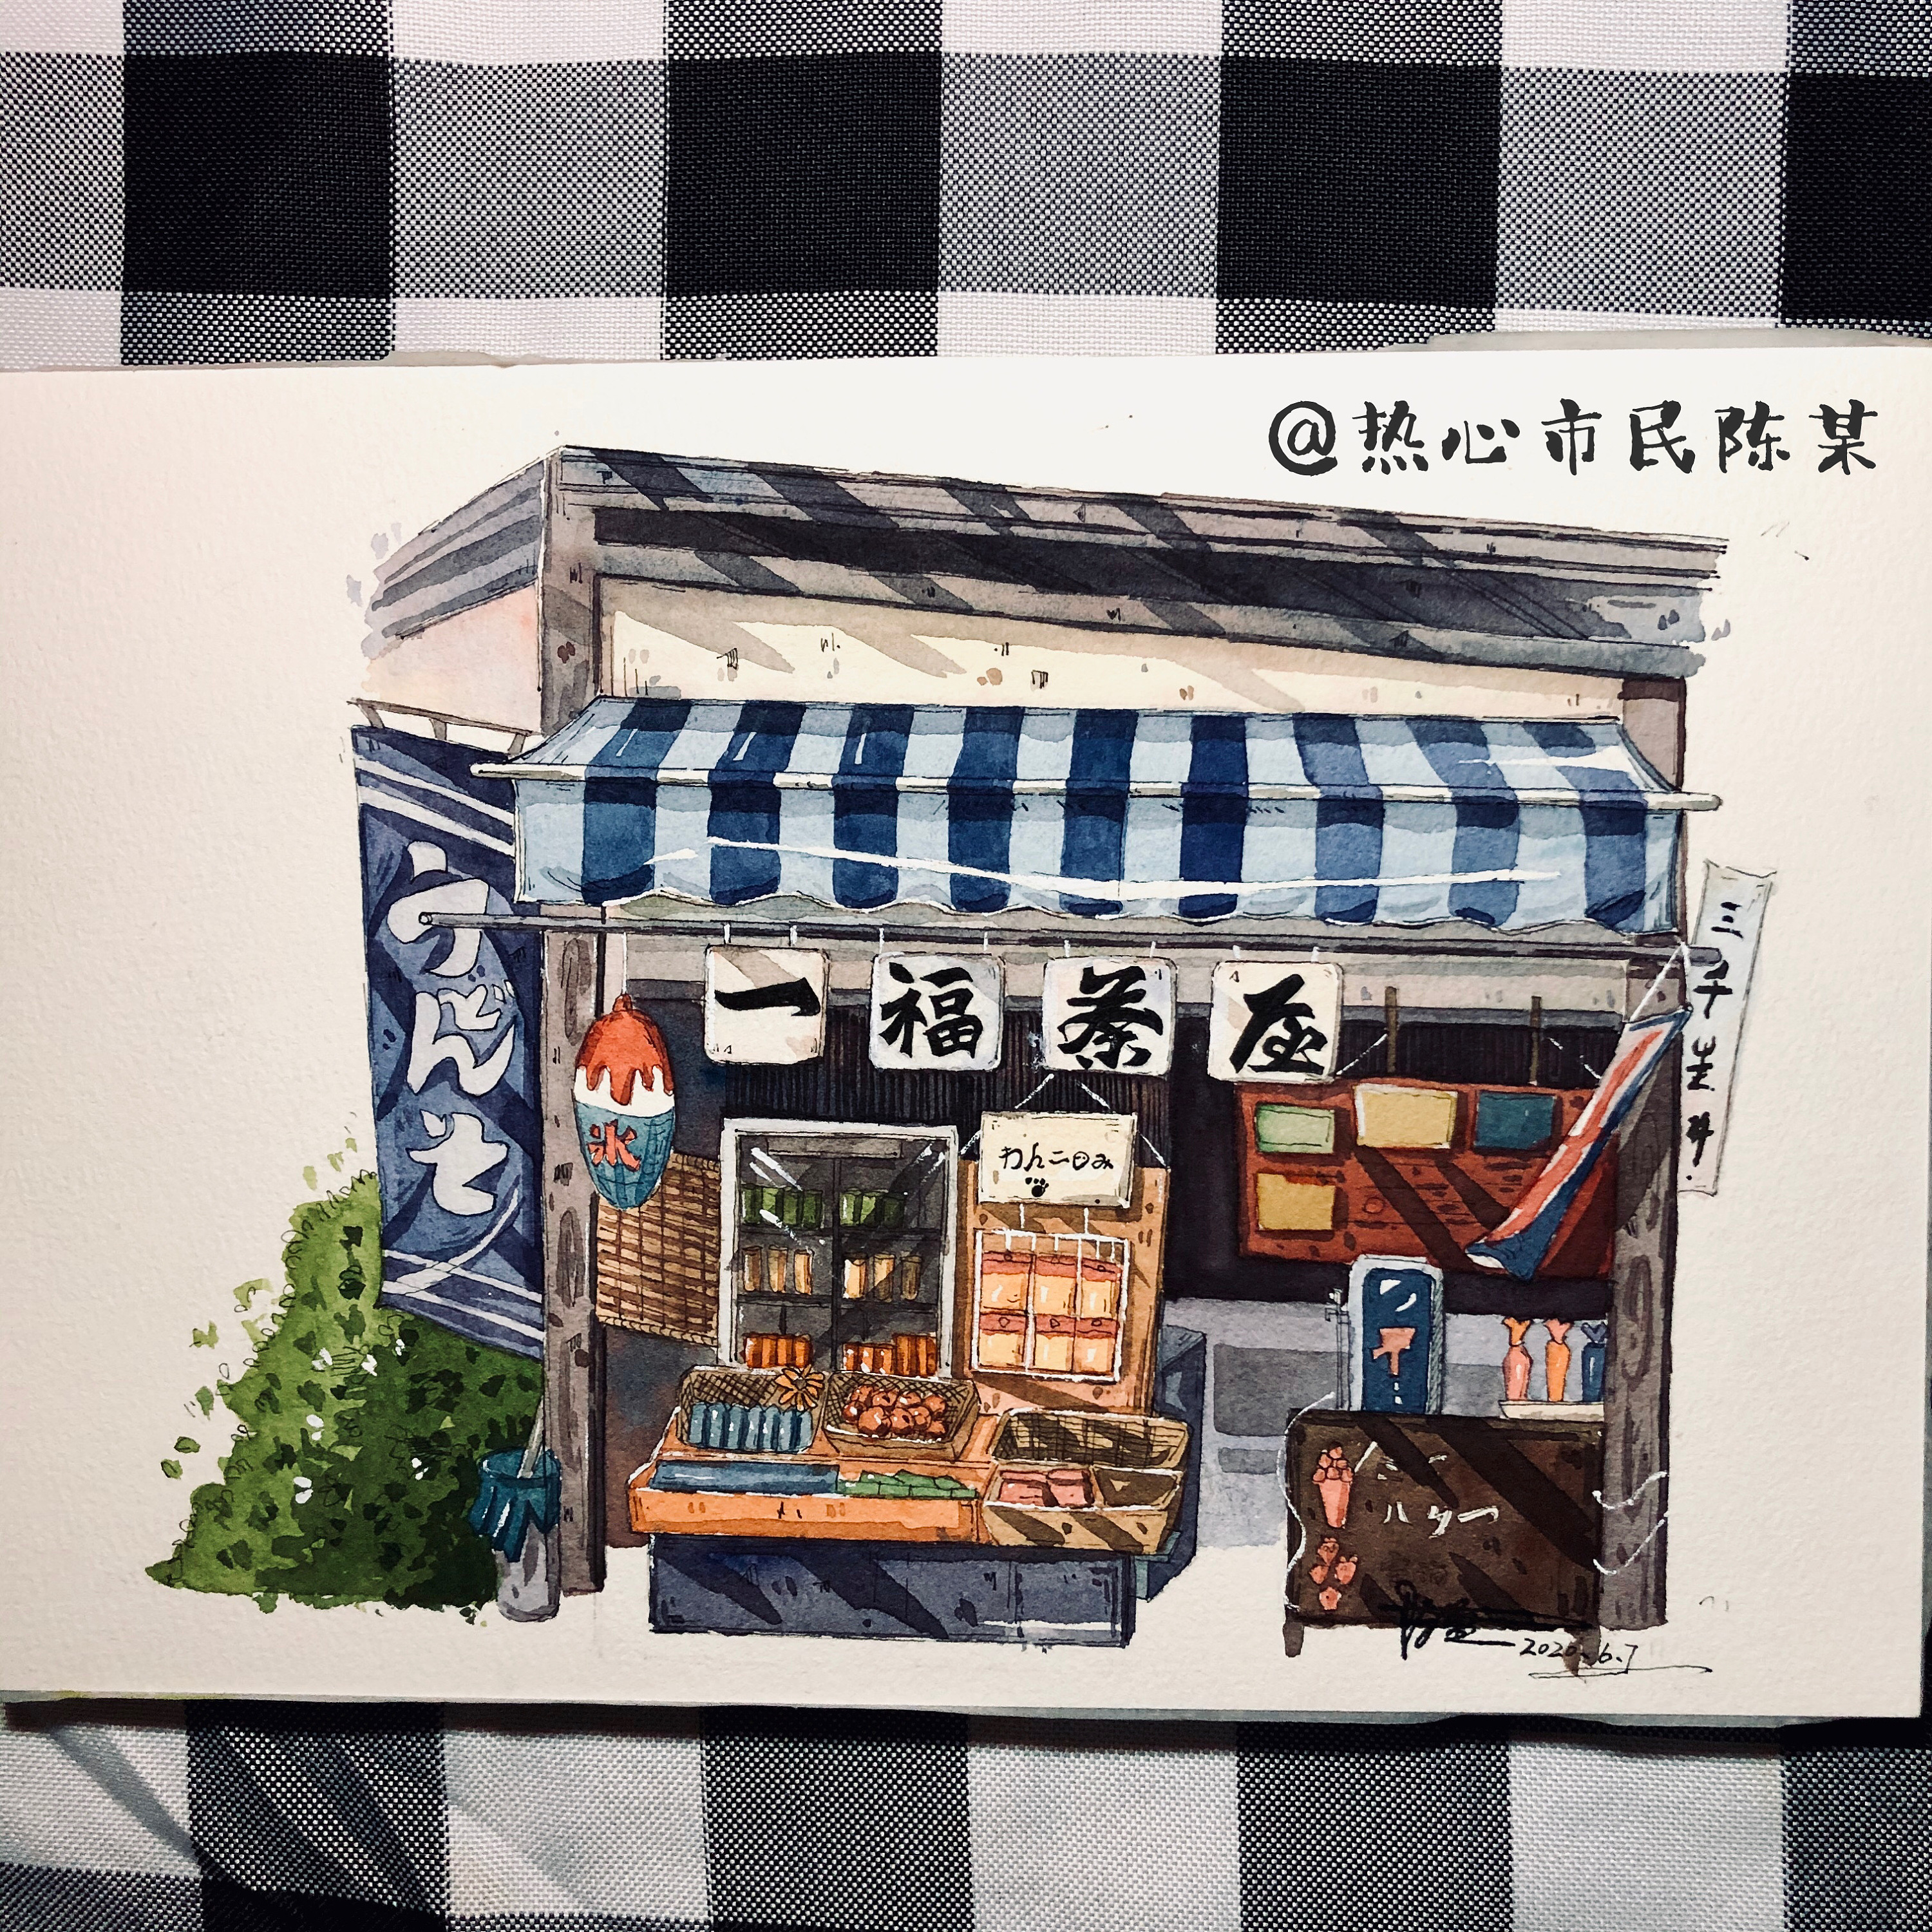 水彩手绘,日式建筑,日式店铺,日式小房子,钢笔淡彩